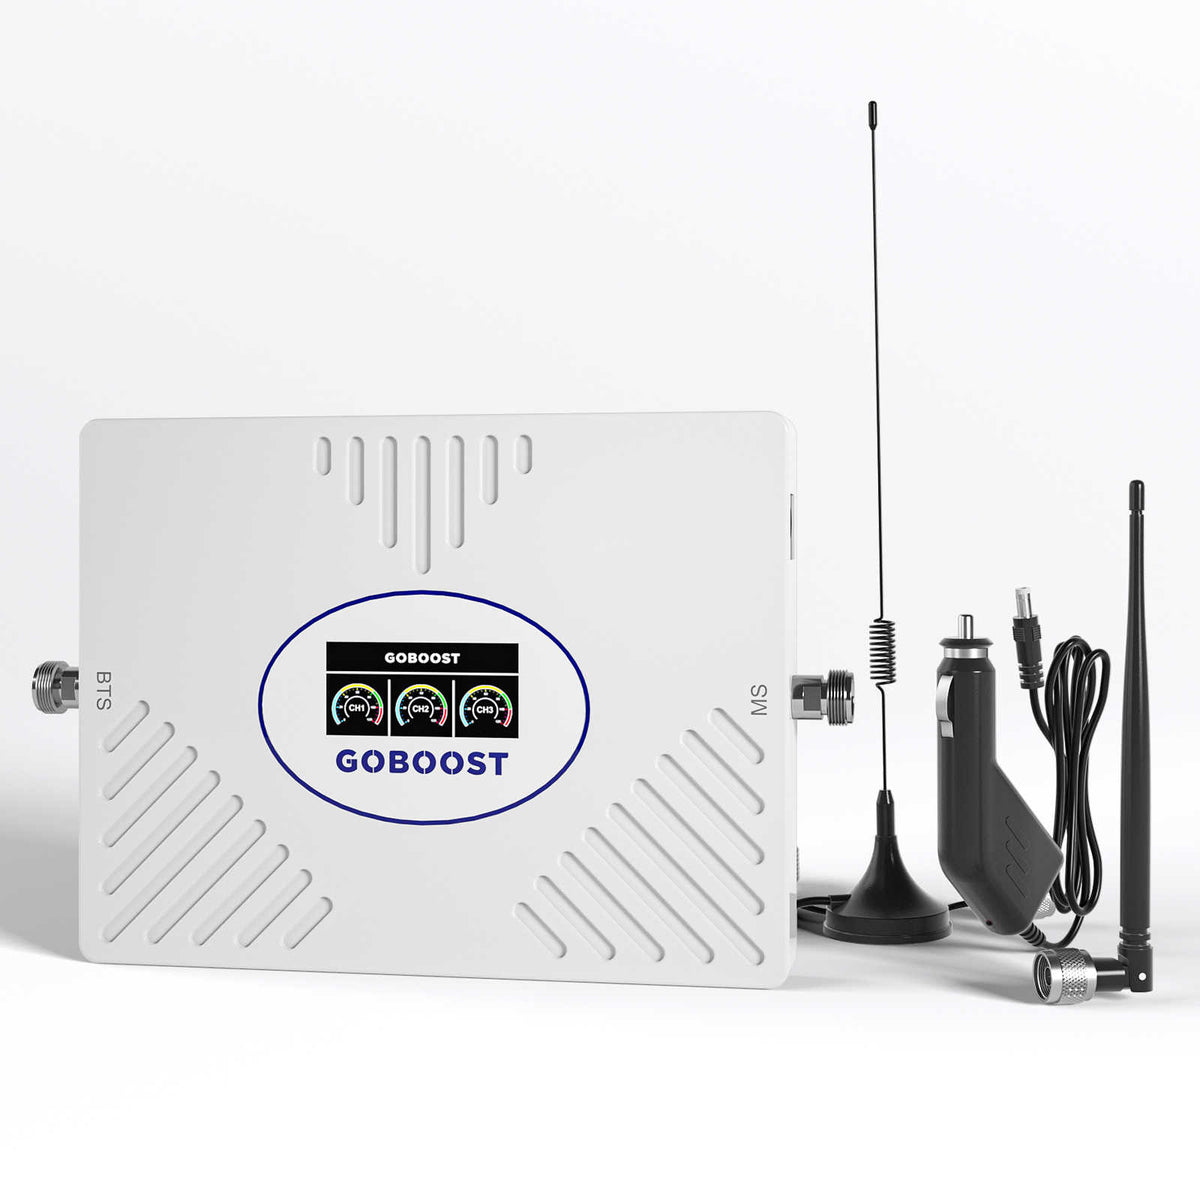 GOBOOST offre spéciale amplificateur de Signal cellulaire pour voiture prend en charge trois bandes de fréquence 70dB Gain élevé